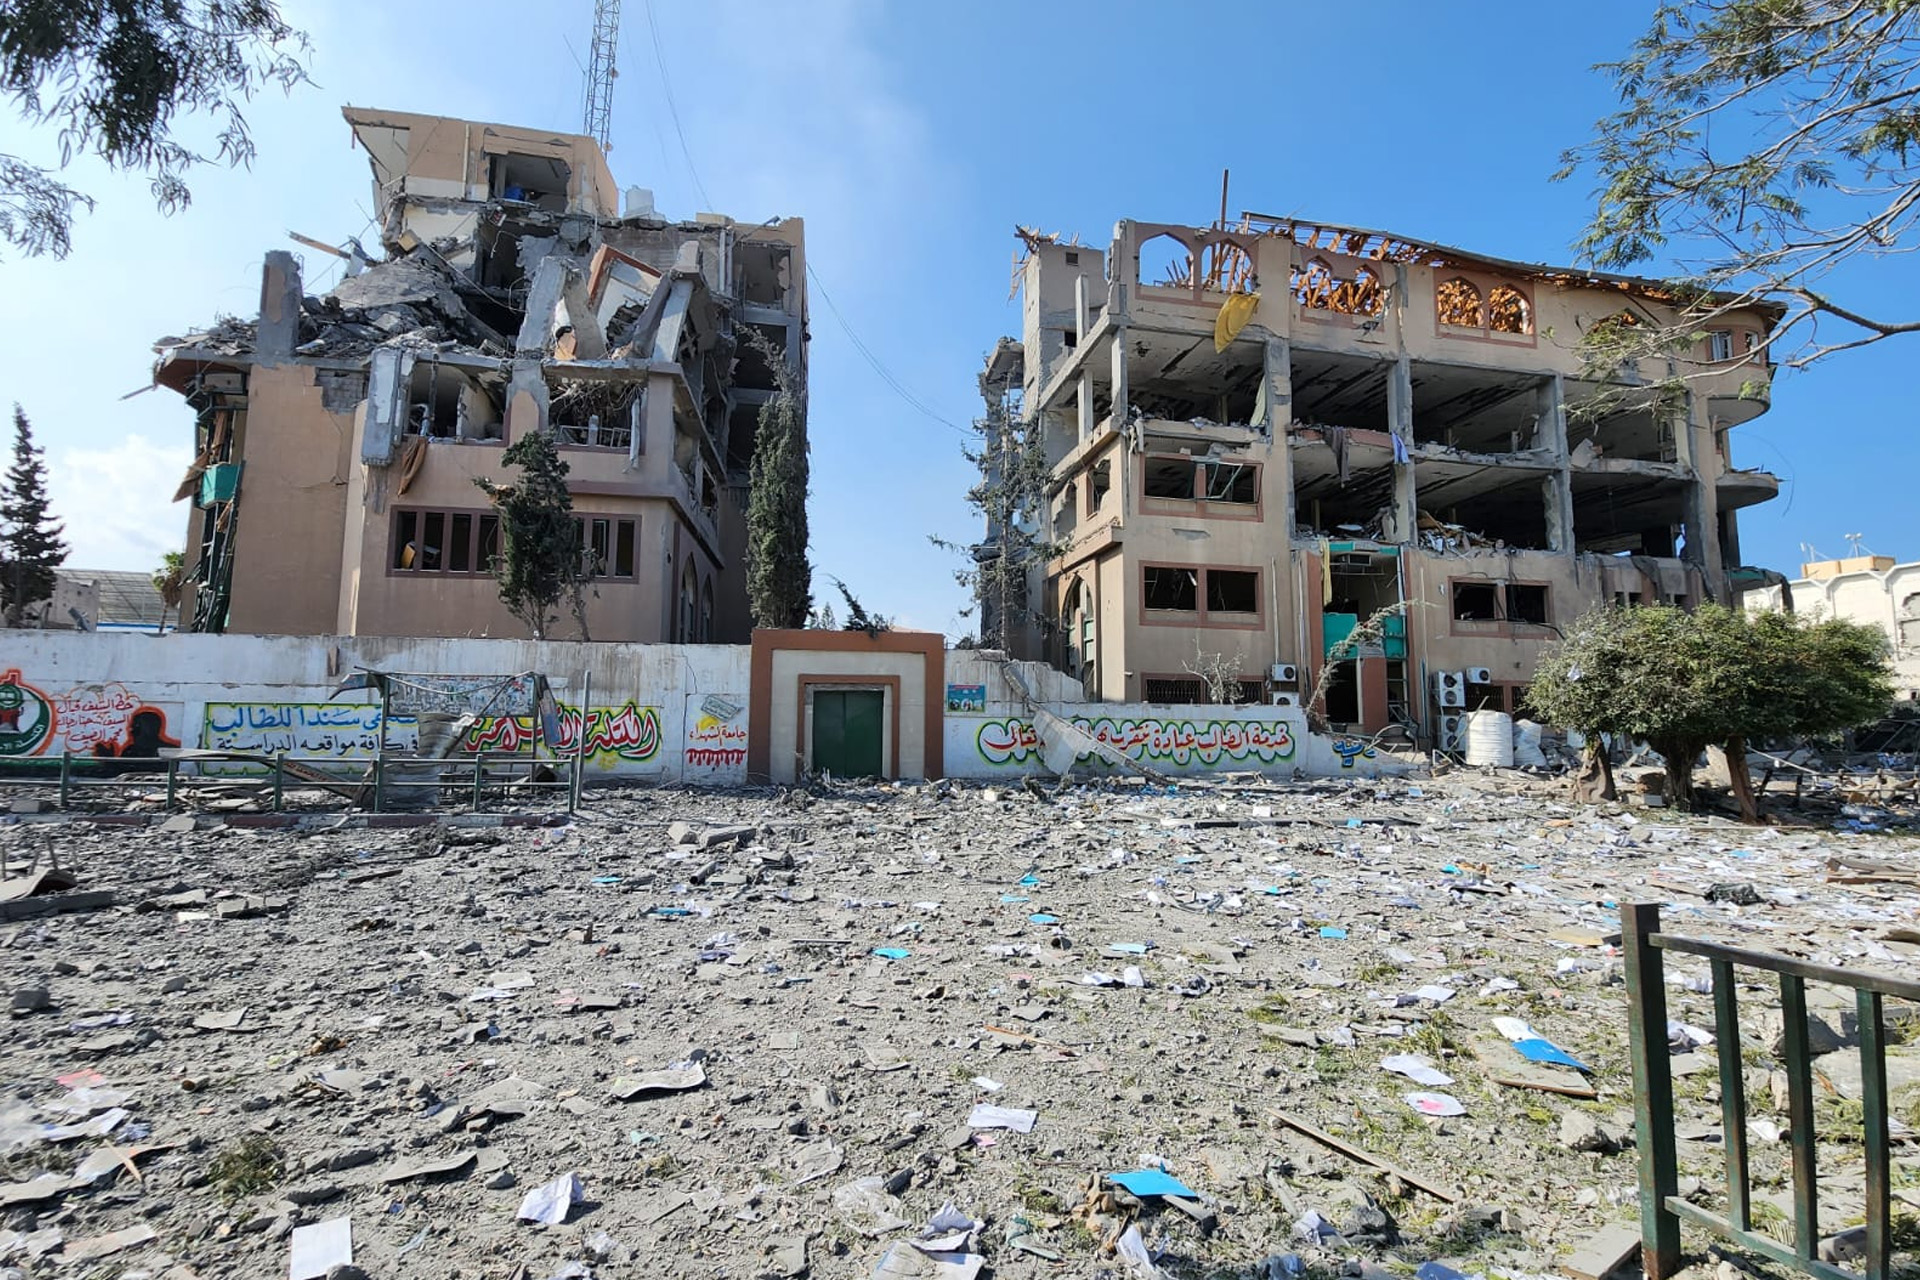 إسرائيل تشن حربا “ممنهجة” على التعليم في غزة للتجهيل والتهجير | سياسة – البوكس نيوز